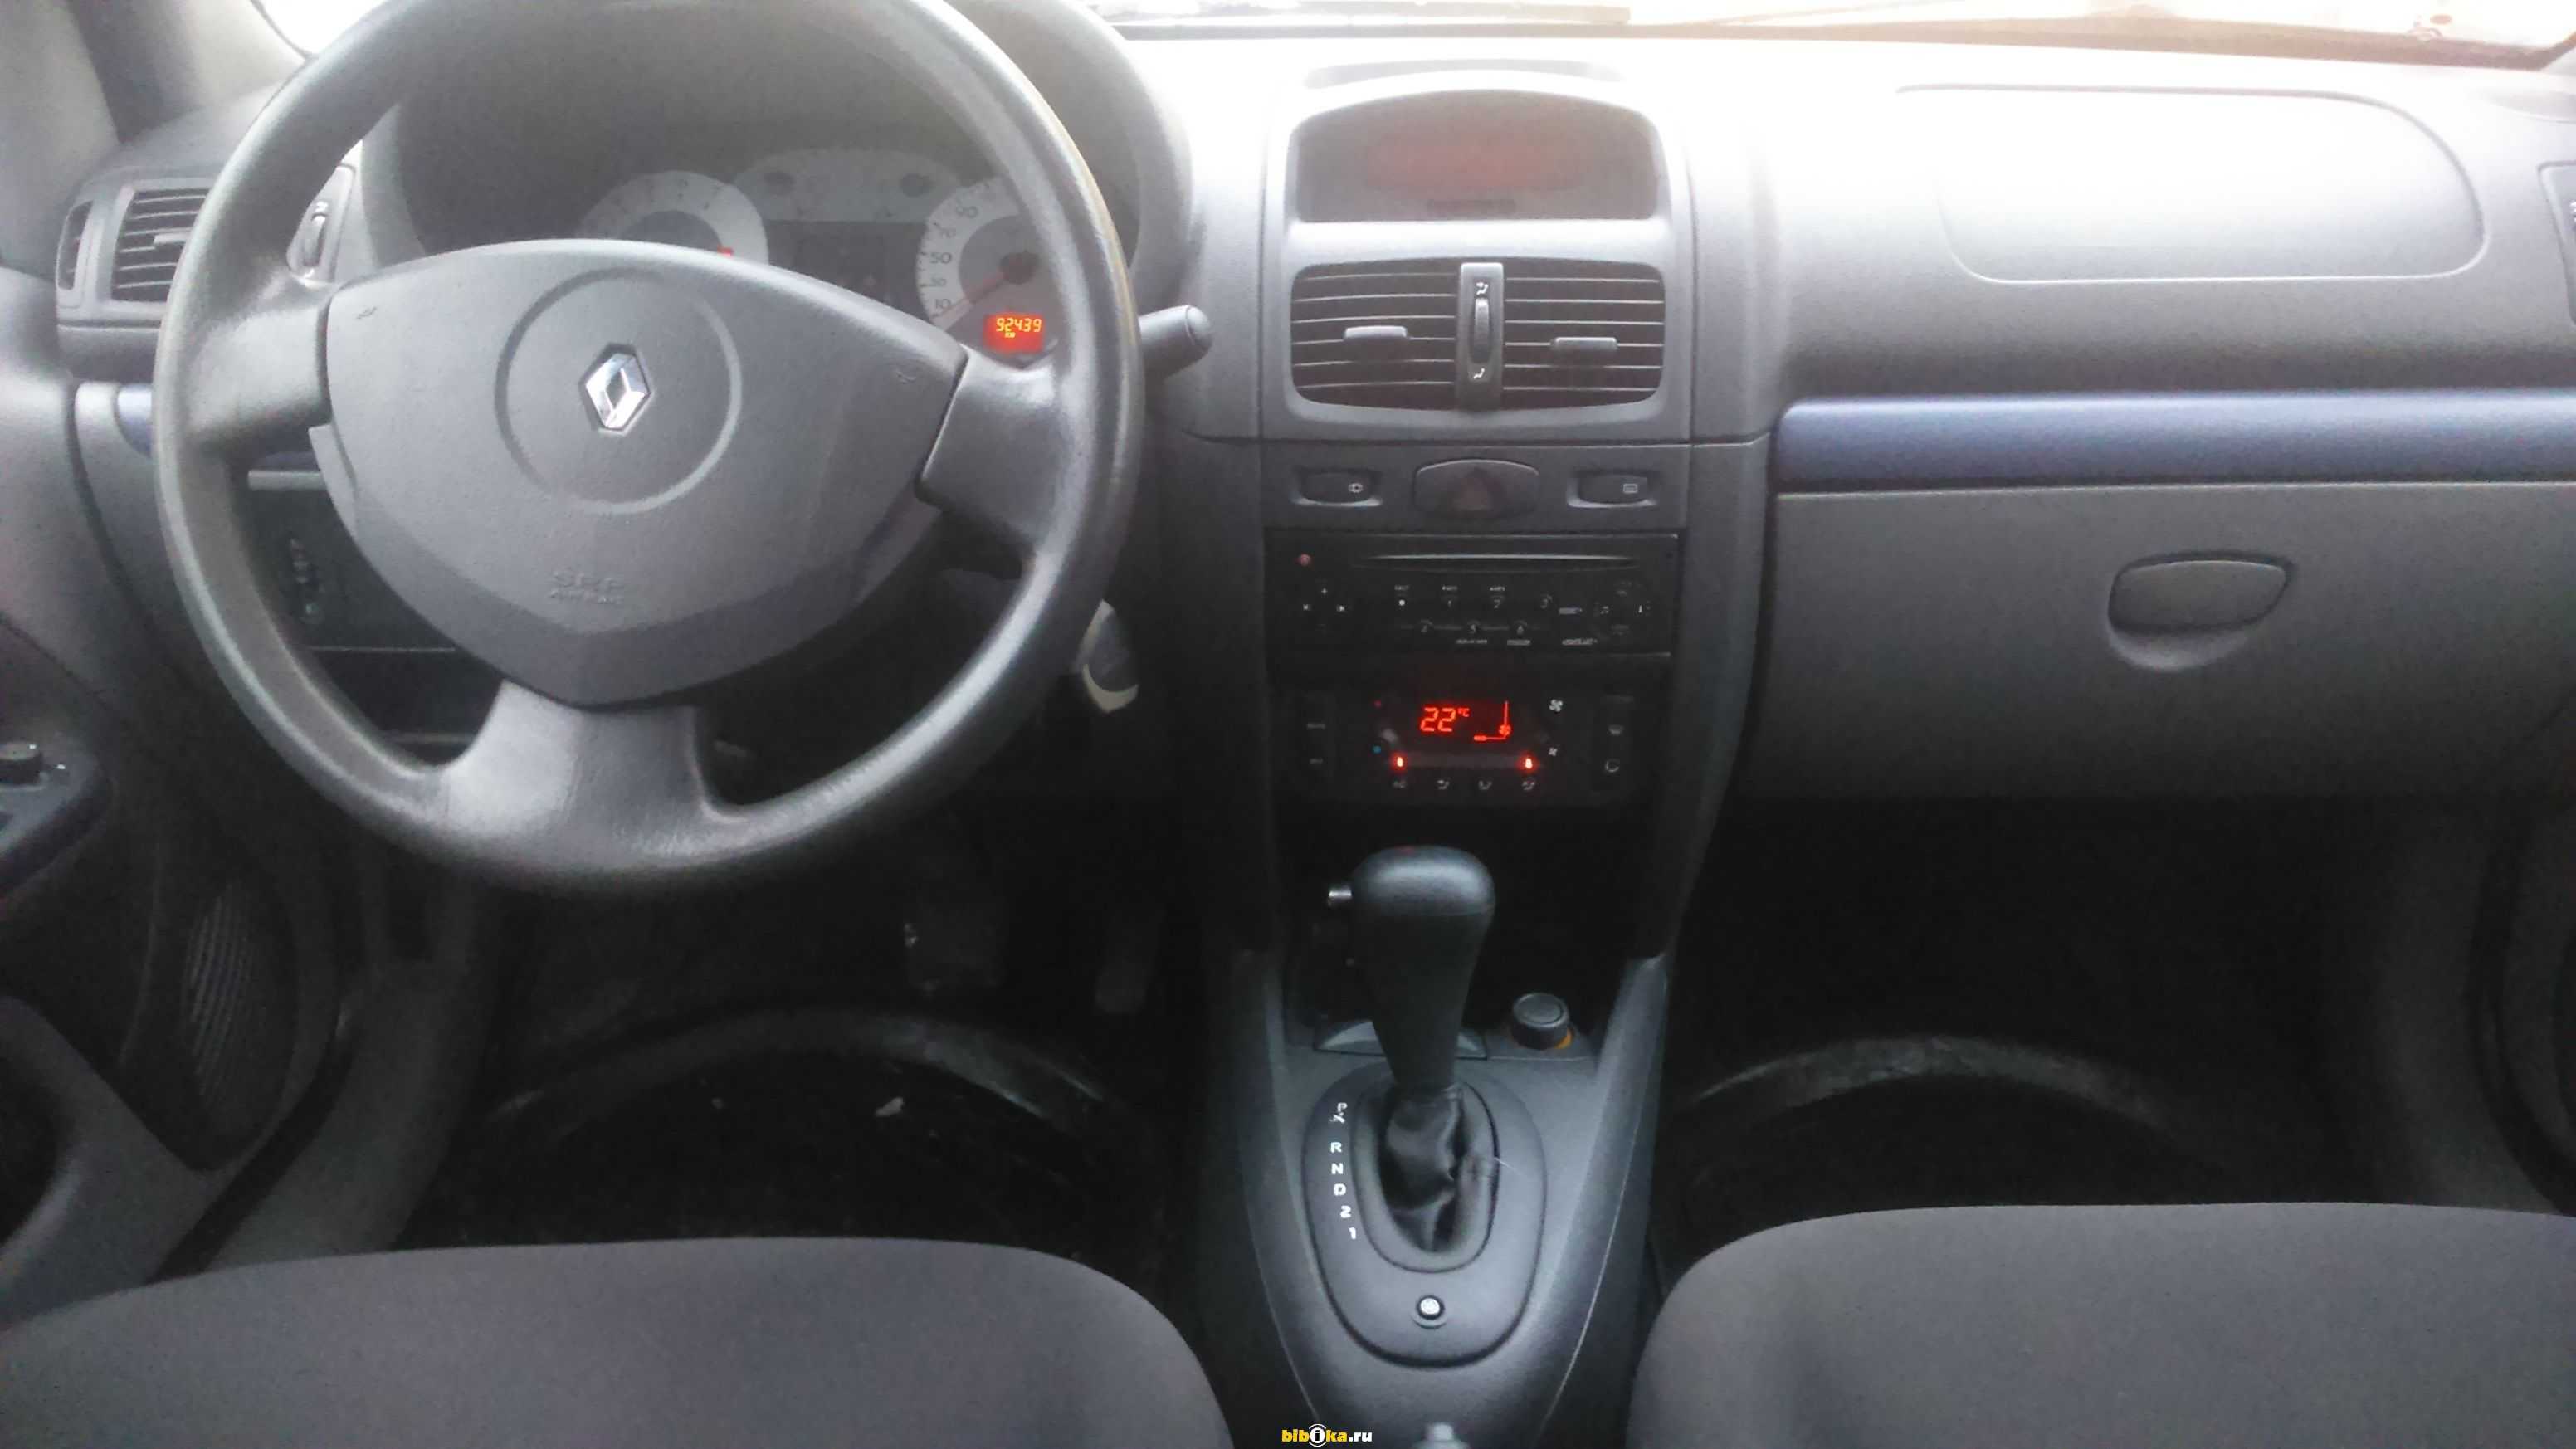 Обзор бюджетного седана Renault Symbol 3 с фотографиями и видео Технические характеристики Рено Симбол 3 и его стоимость